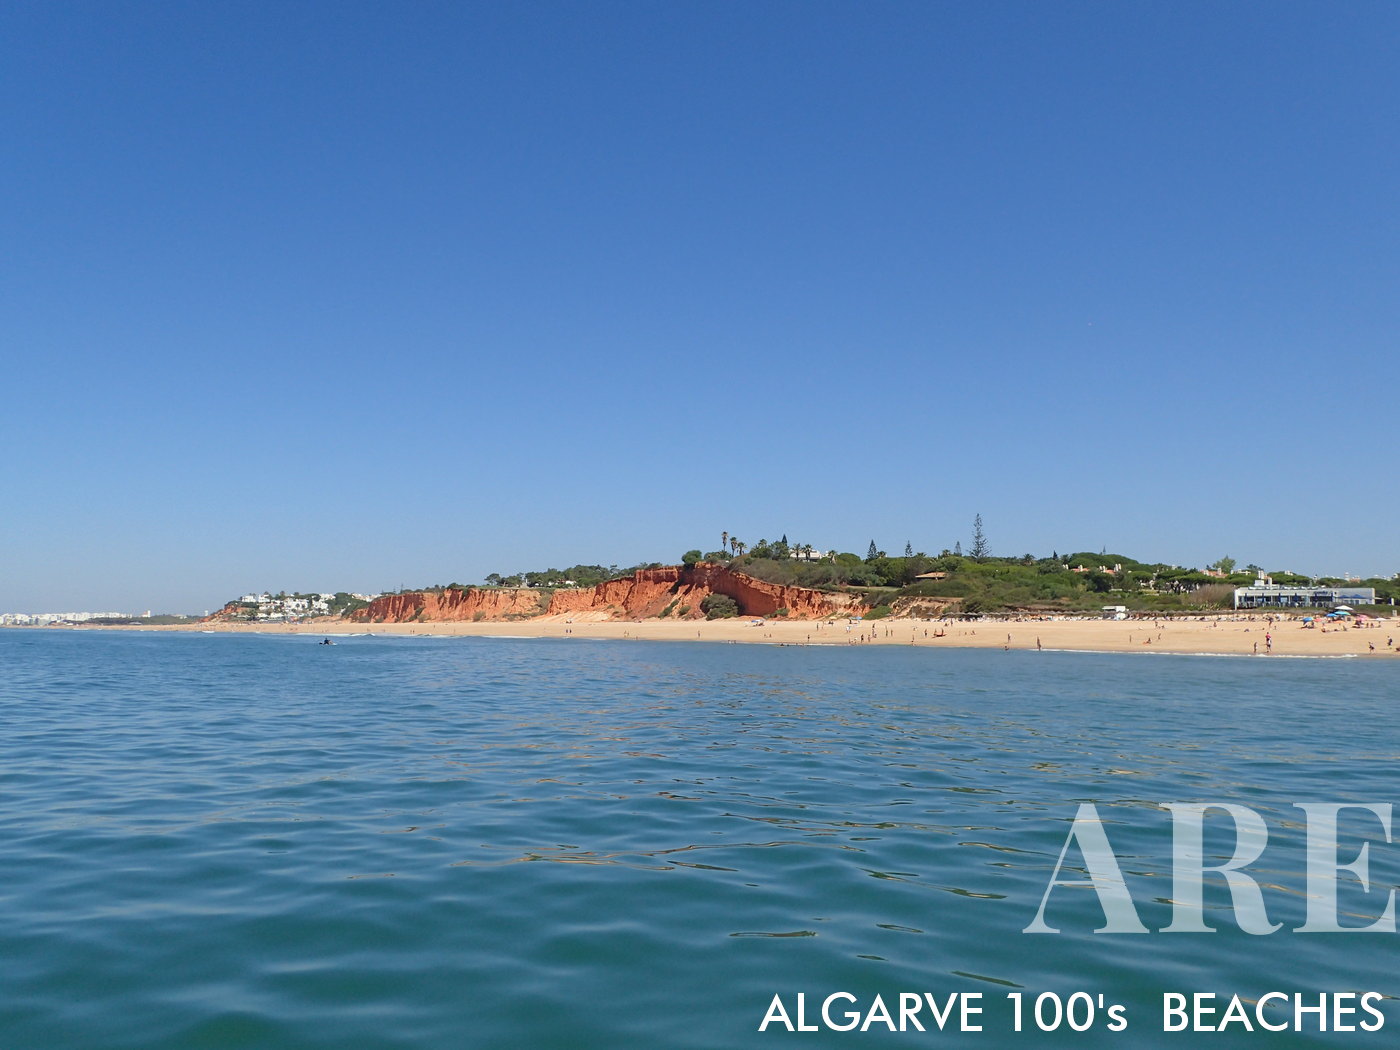 As praias do Garrão e do Ancão são duas das joias escondidas do Algarve, aninhadas entre as áreas movimentadas da Quinta do Lago e Vale do Lobo. Ambas as praias possuem areia dourada e águas cristalinas e azuis, proporcionando um cenário idílico para os banhistas relaxarem e aproveitarem o sol.